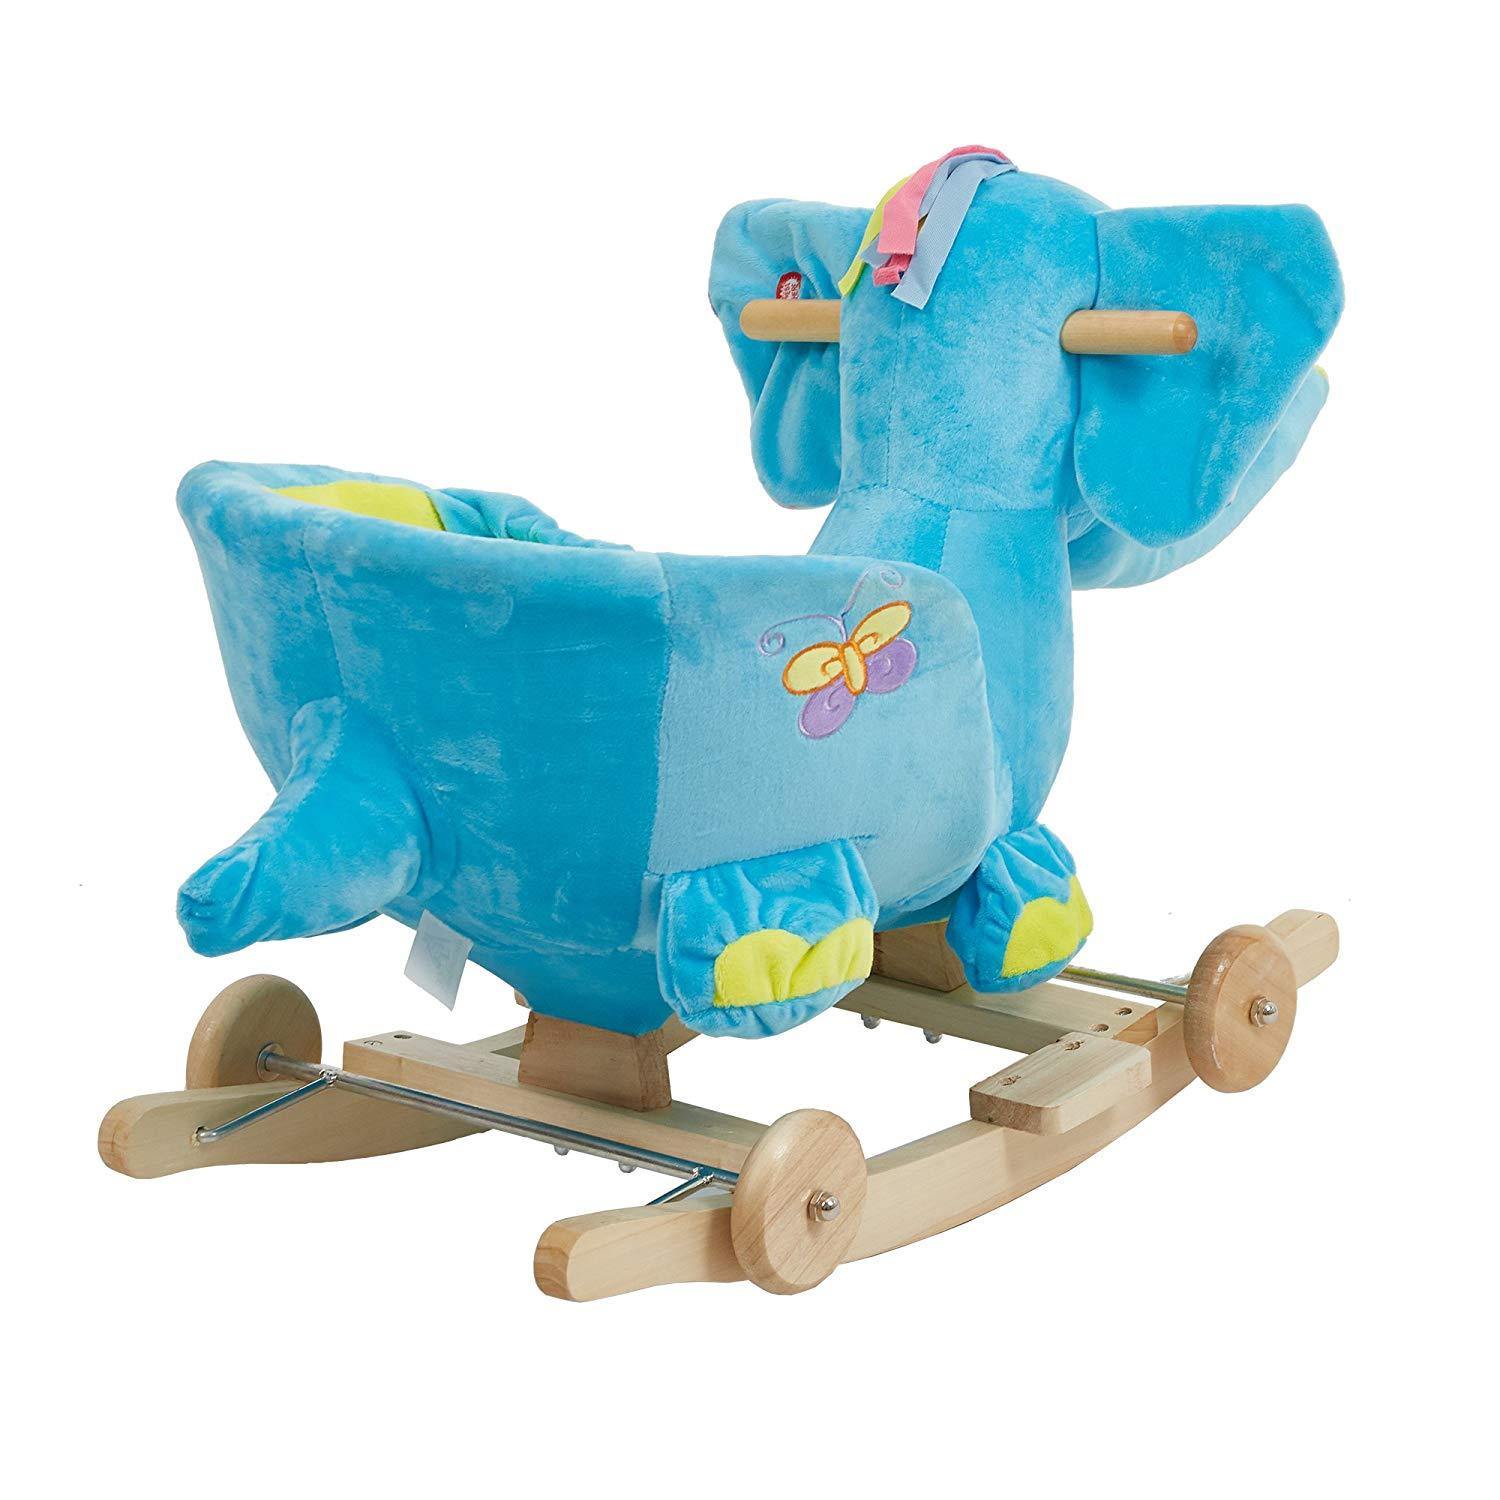 Bosonshop Plush Animal Rocking Horse with Wheels, Blue Elephant